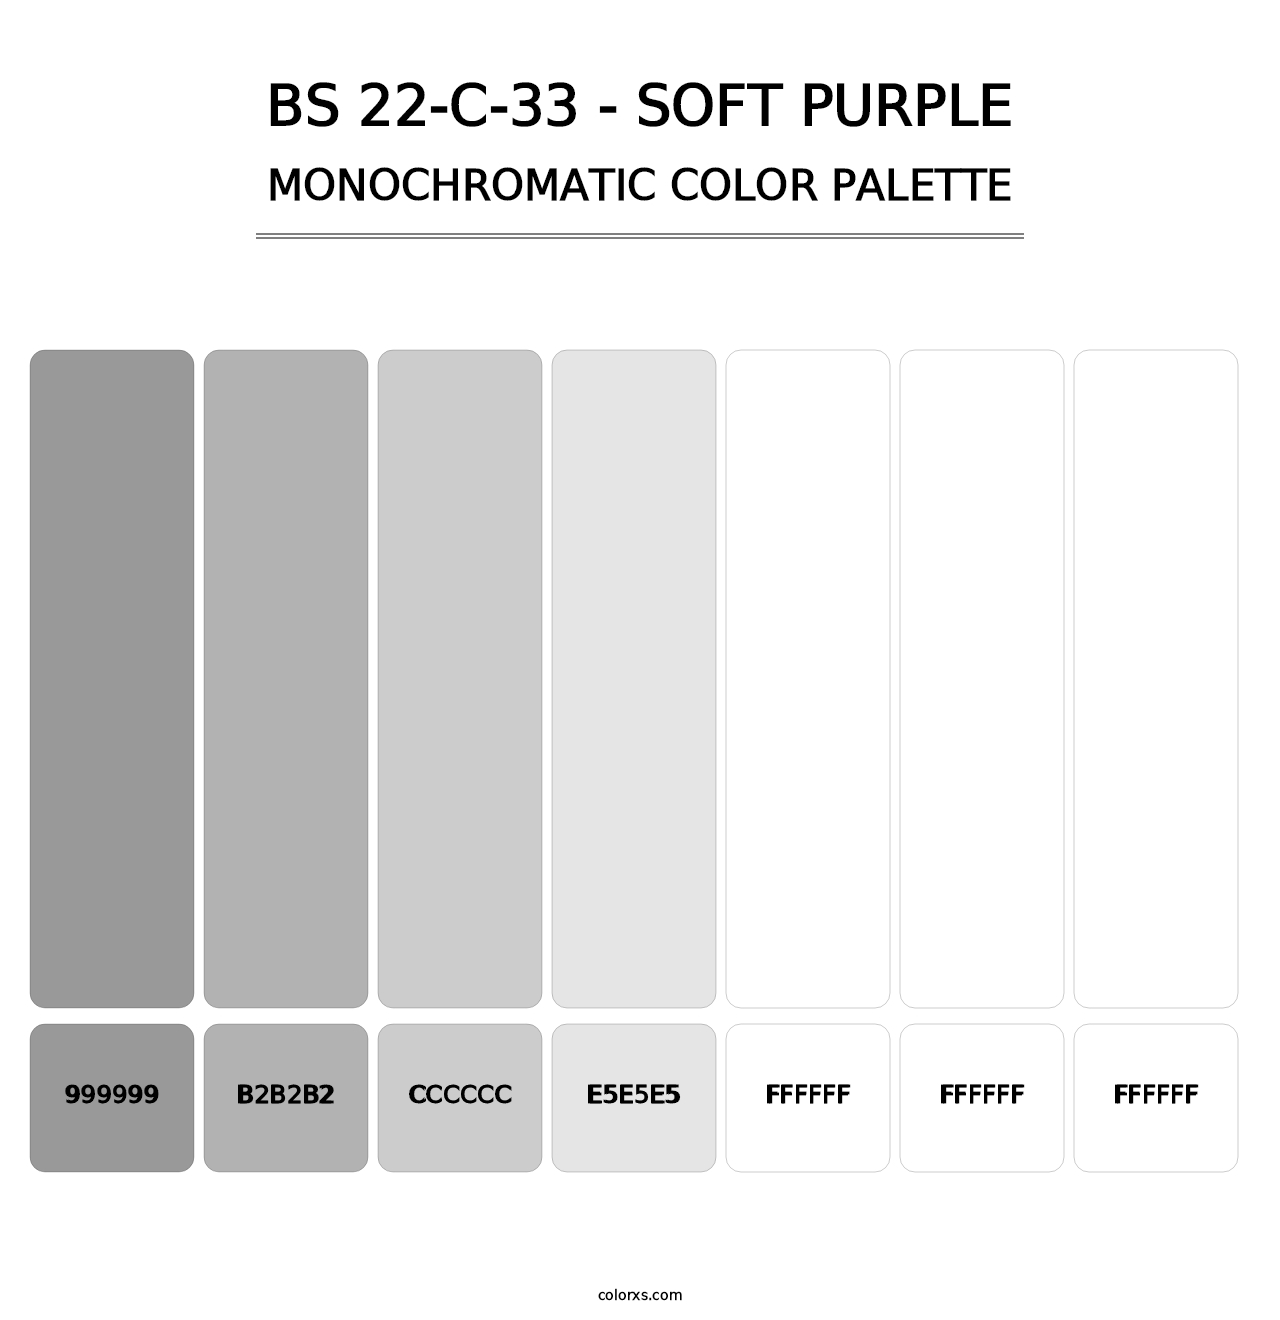 BS 22-C-33 - Soft Purple - Monochromatic Color Palette